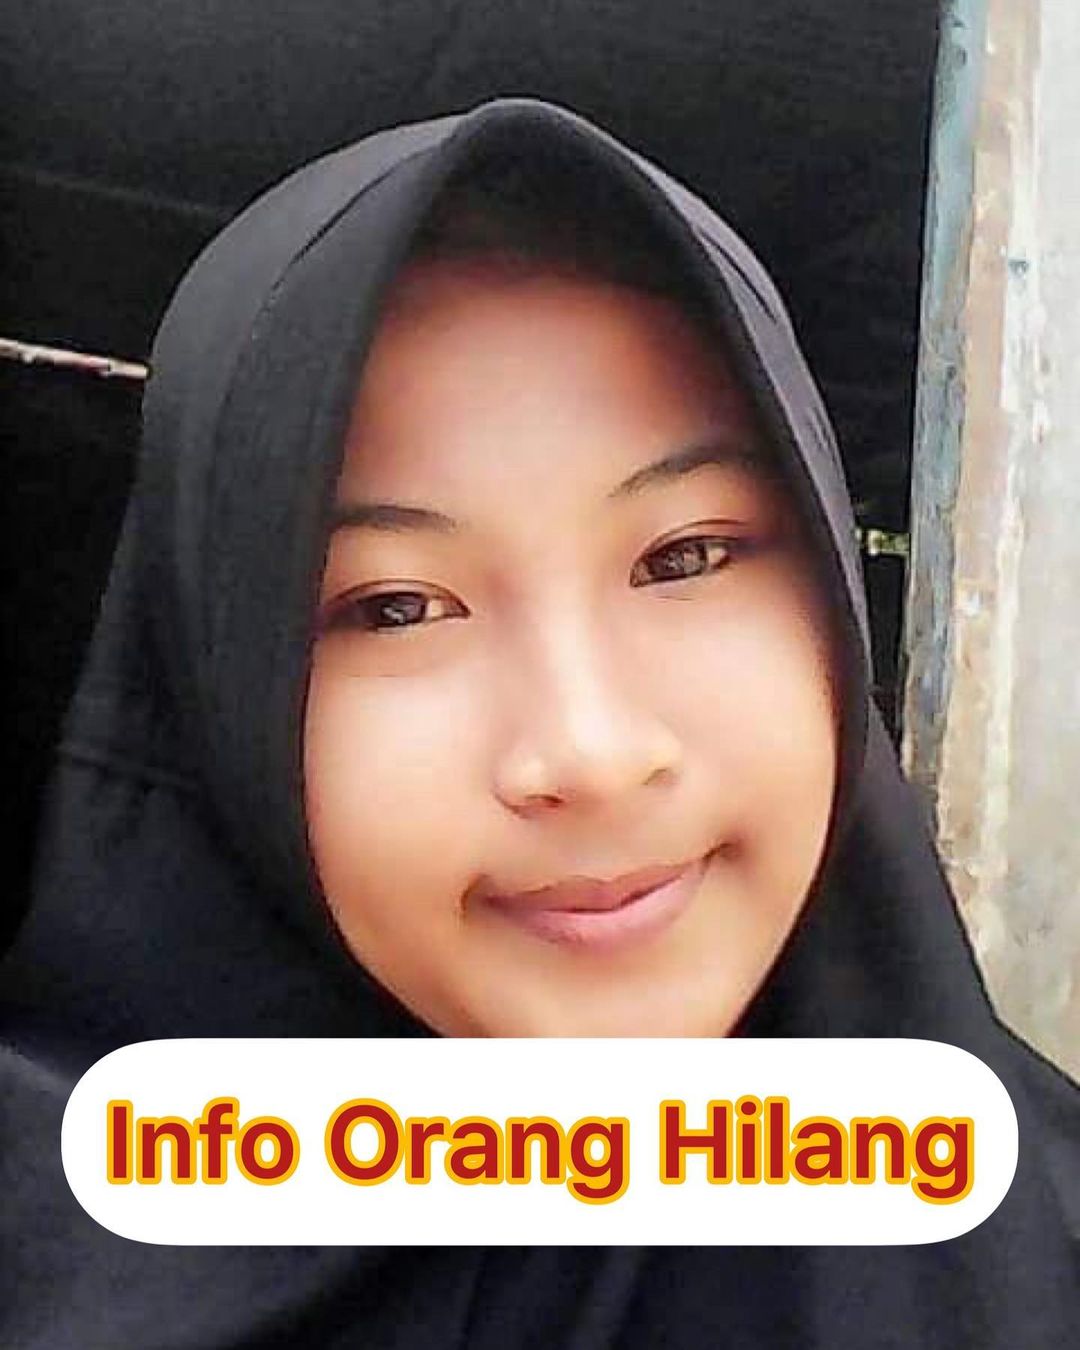 Mahasiswi Kaur yang Dilaporkan Hilang, Sempat Terlihat di Nusa Indah, 21 April 